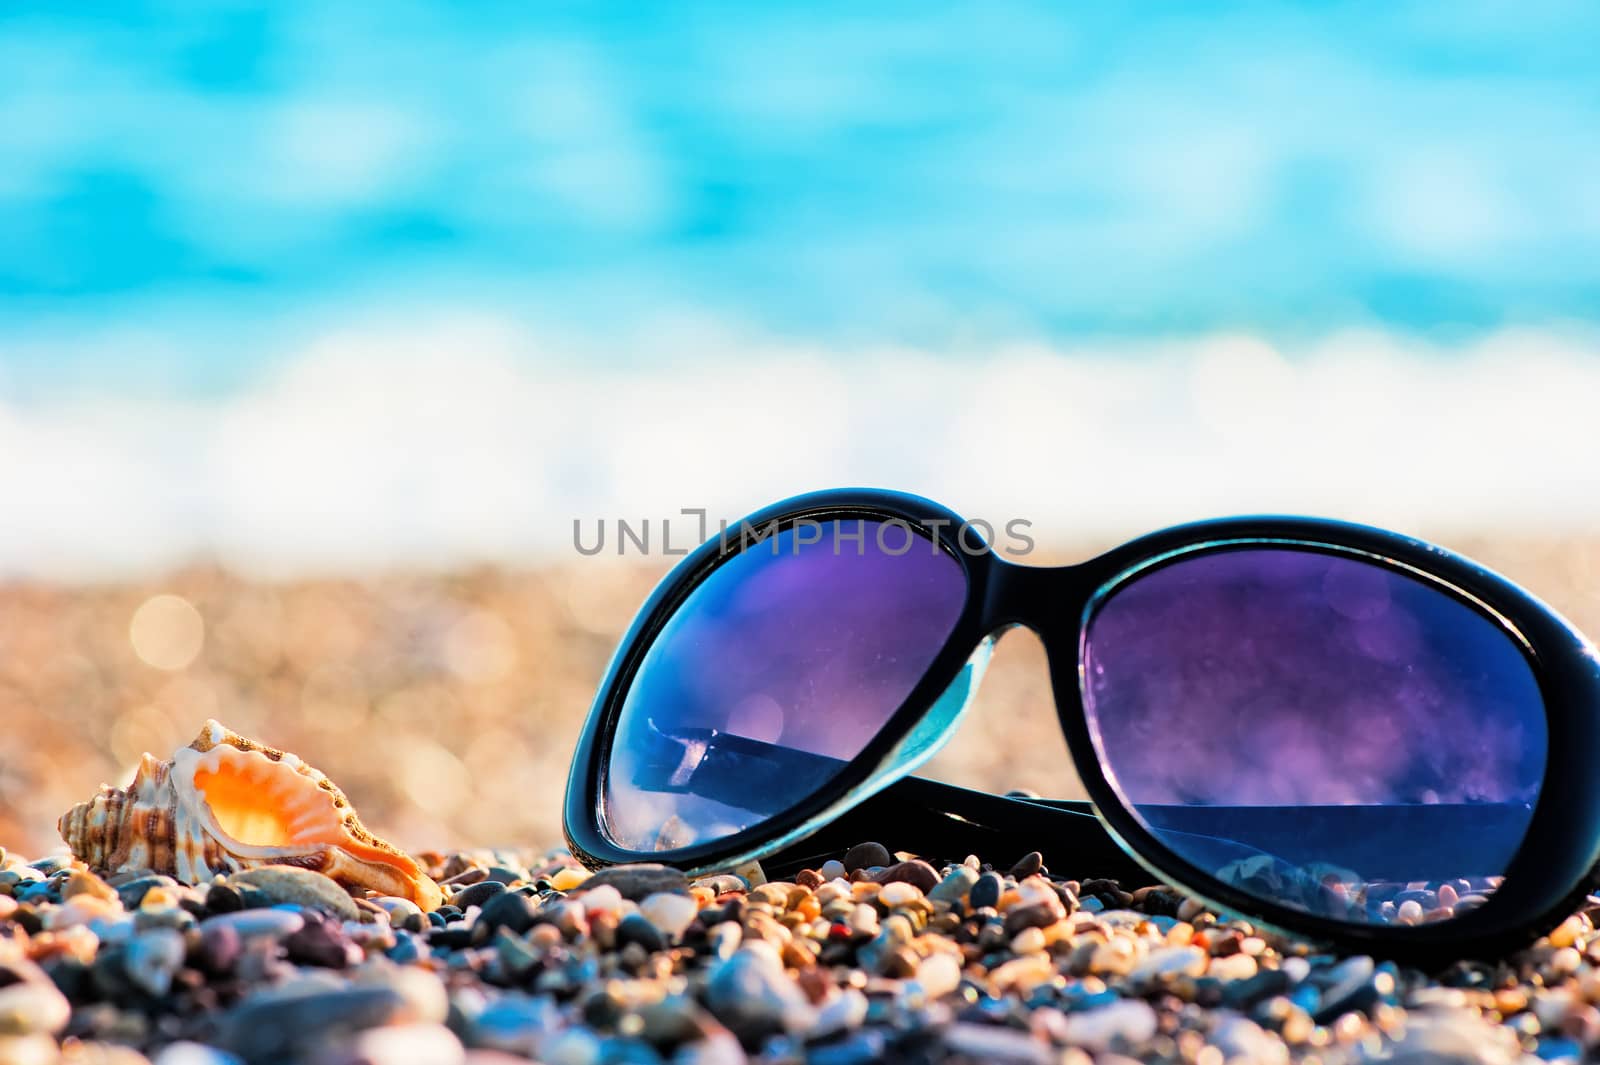 Sunglasses and shells lie on the shingle beach sea